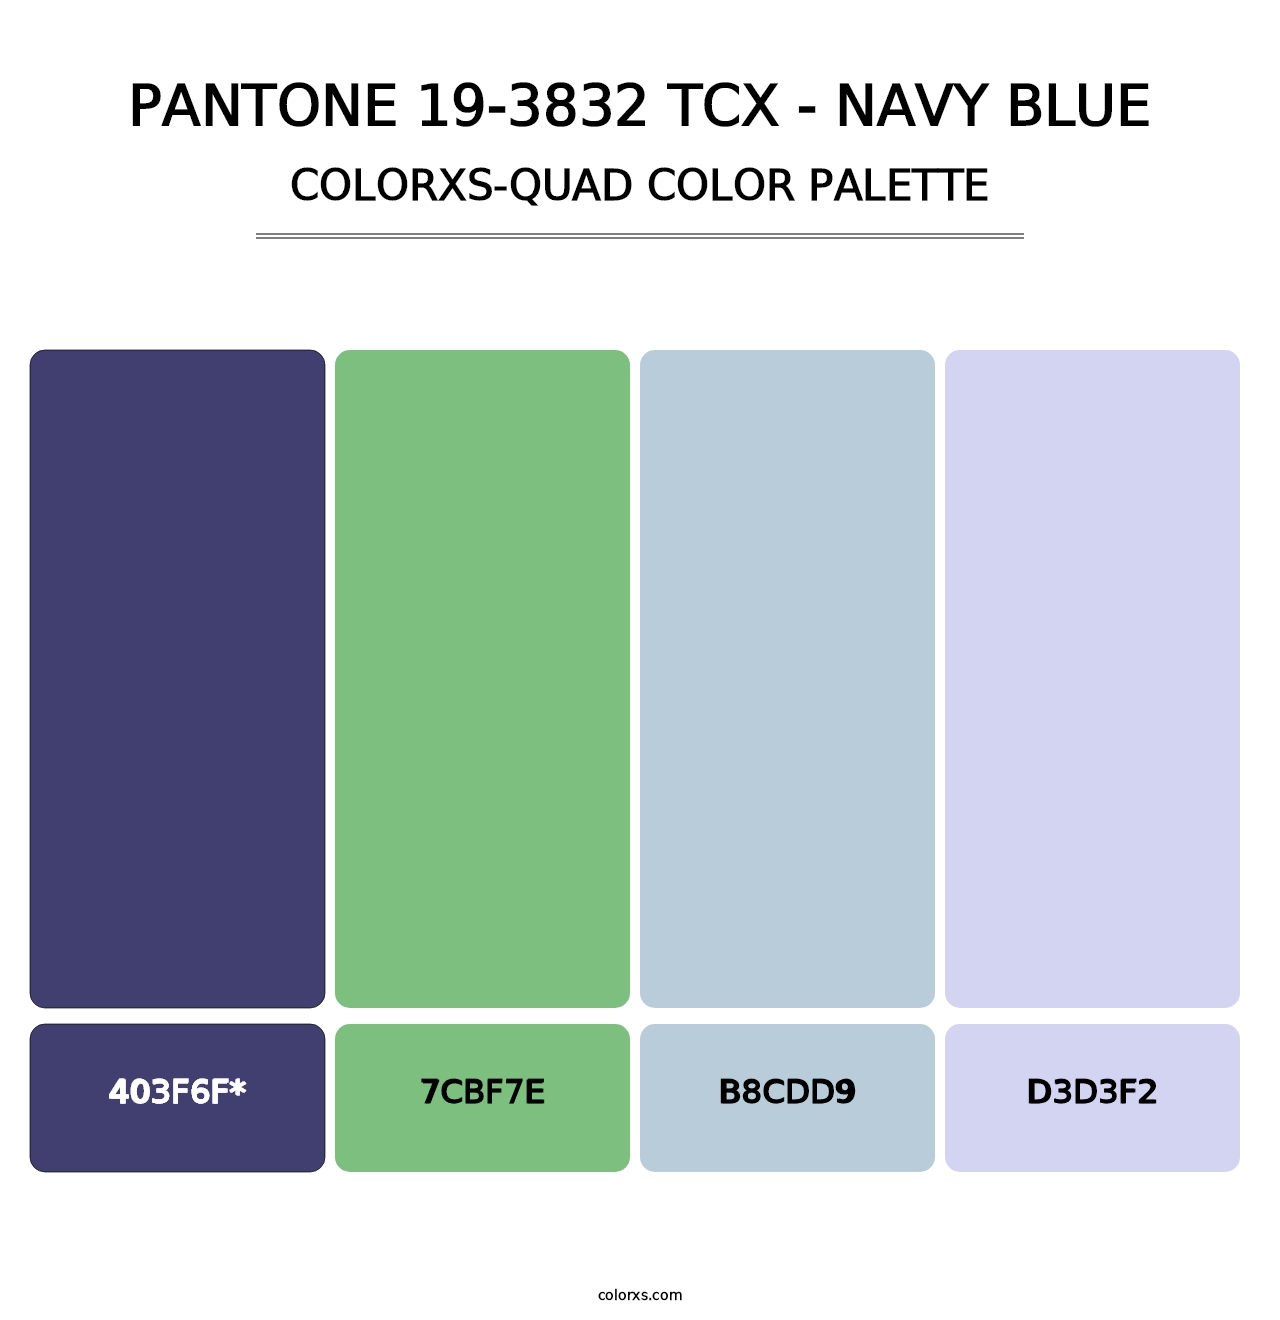 PANTONE 19-3832 TCX - Navy Blue - Colorxs Quad Palette